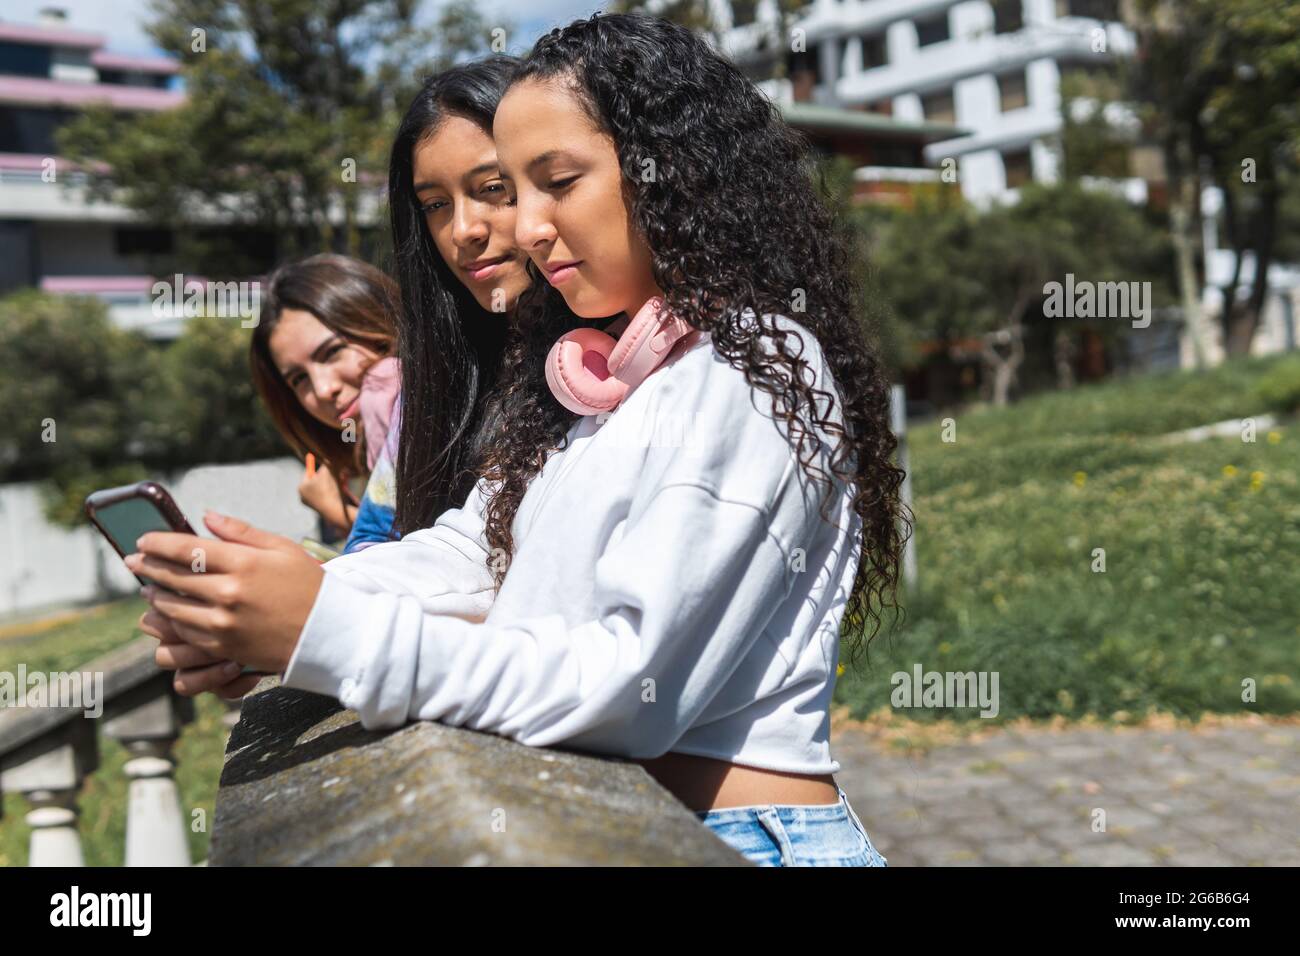 Ein lockiges Teenager-Mädchen und ihre Freundin mit brünettem Fell interagieren mit ihrem Handy, während ein anderes Mädchen sie in einem zweiten Einschuss unscharf sieht Stockfoto